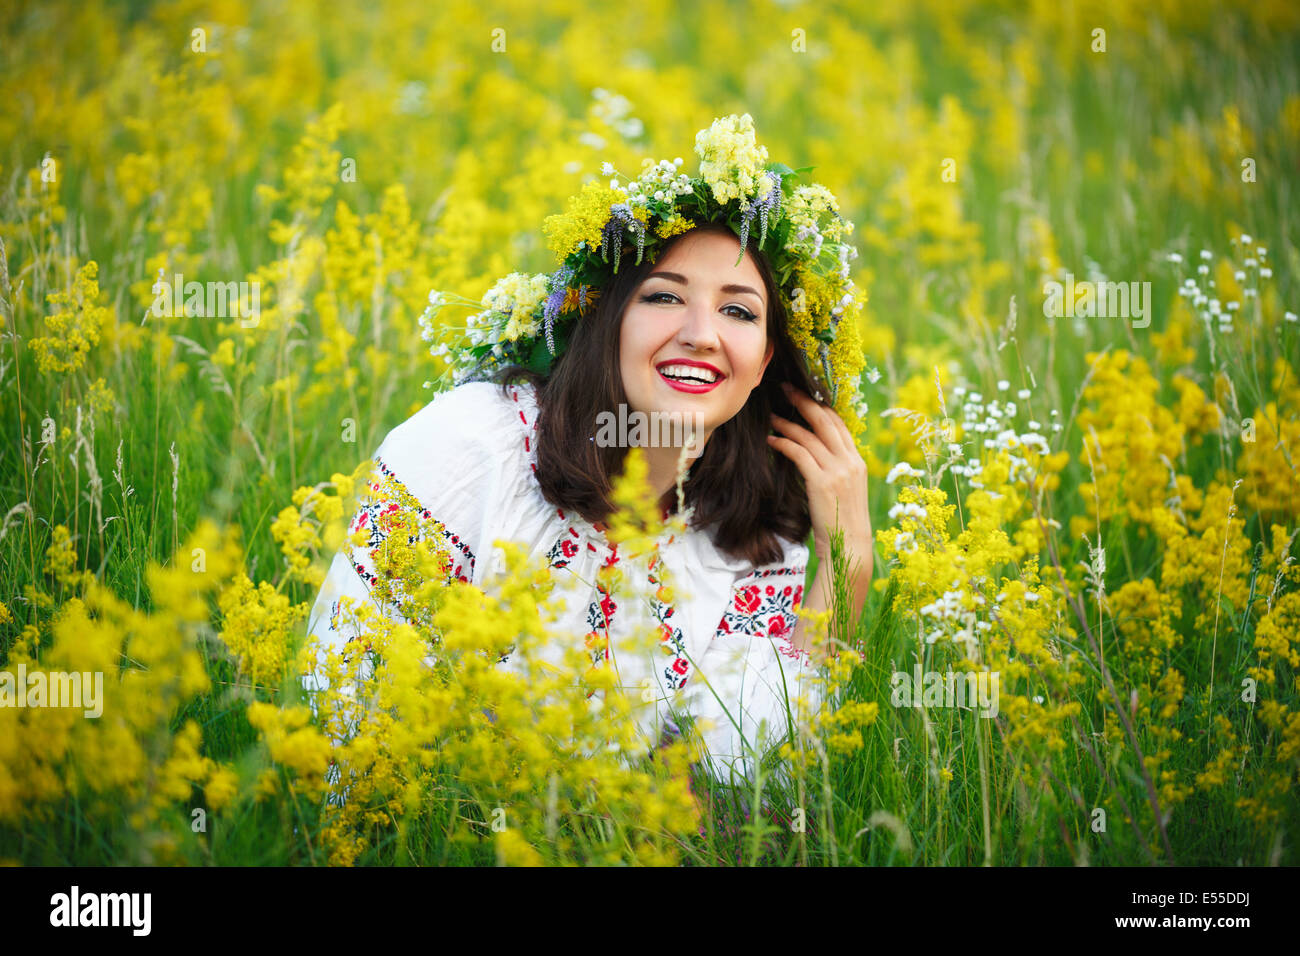 Young beautiful smiling girl en costume ukrainien avec une couronne sur sa tête dans un pré Banque D'Images